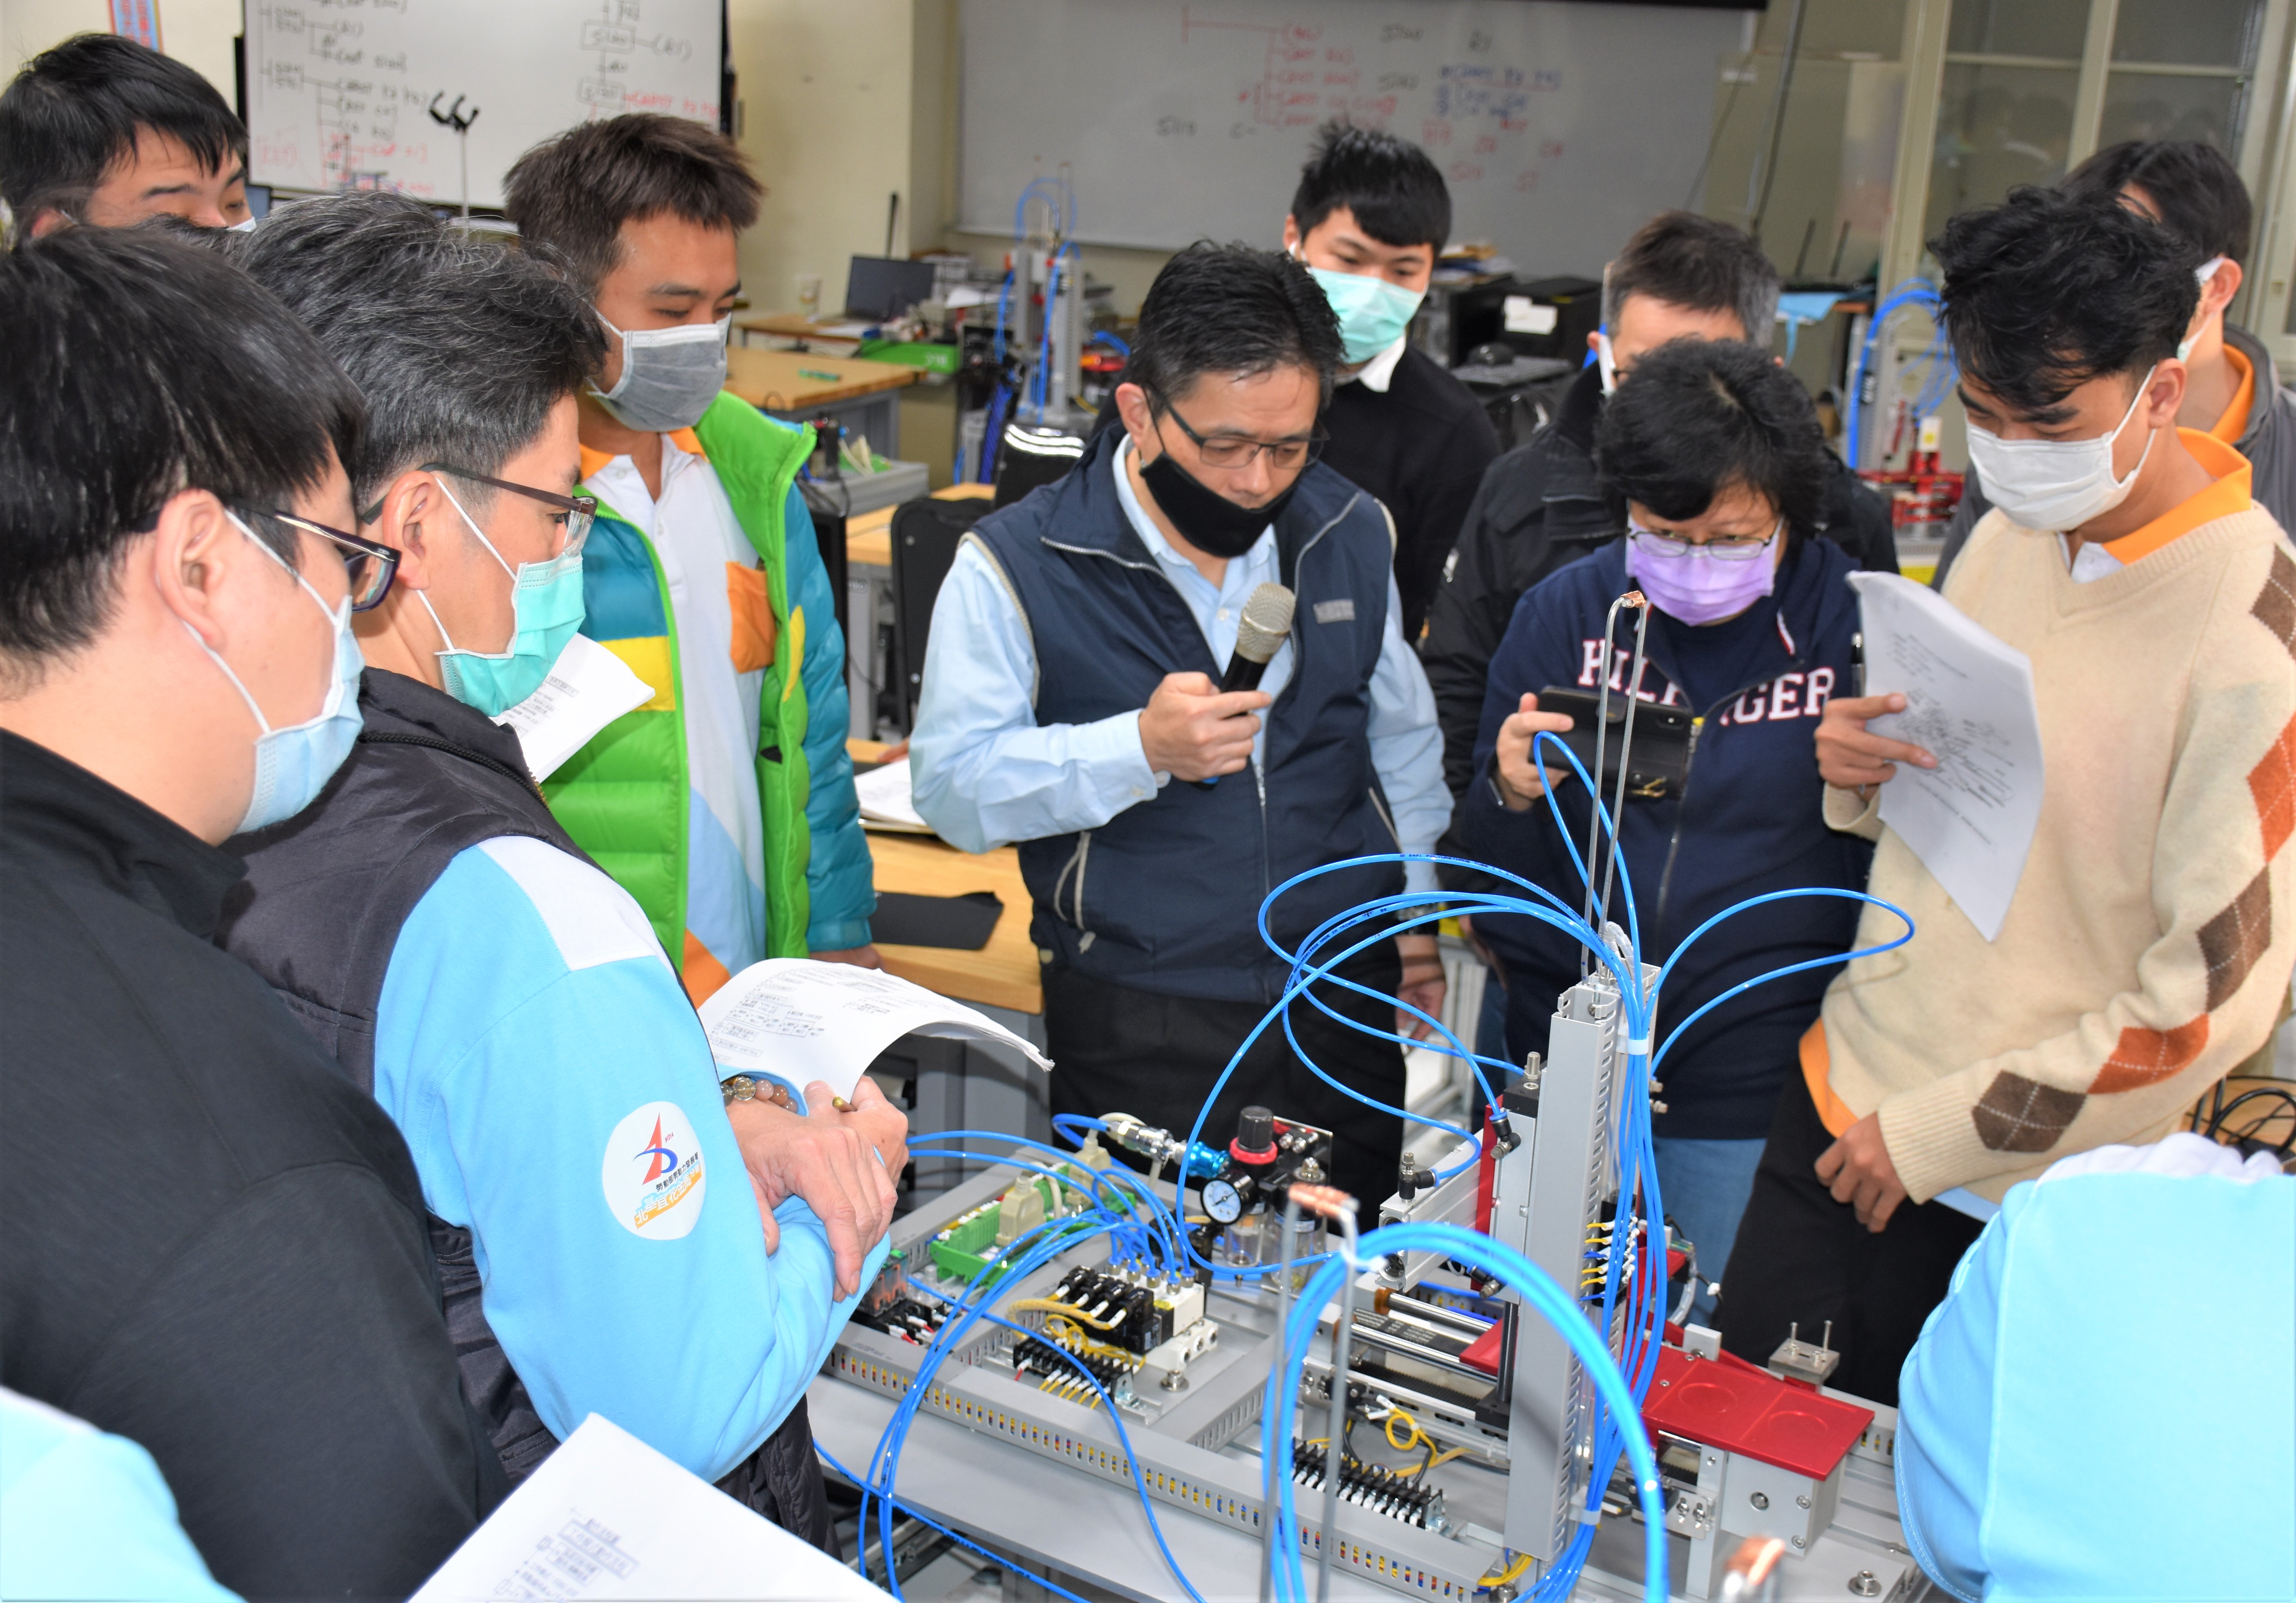 分署訓練師於機電整合之術科課程中向學員解說機電整合應用控制